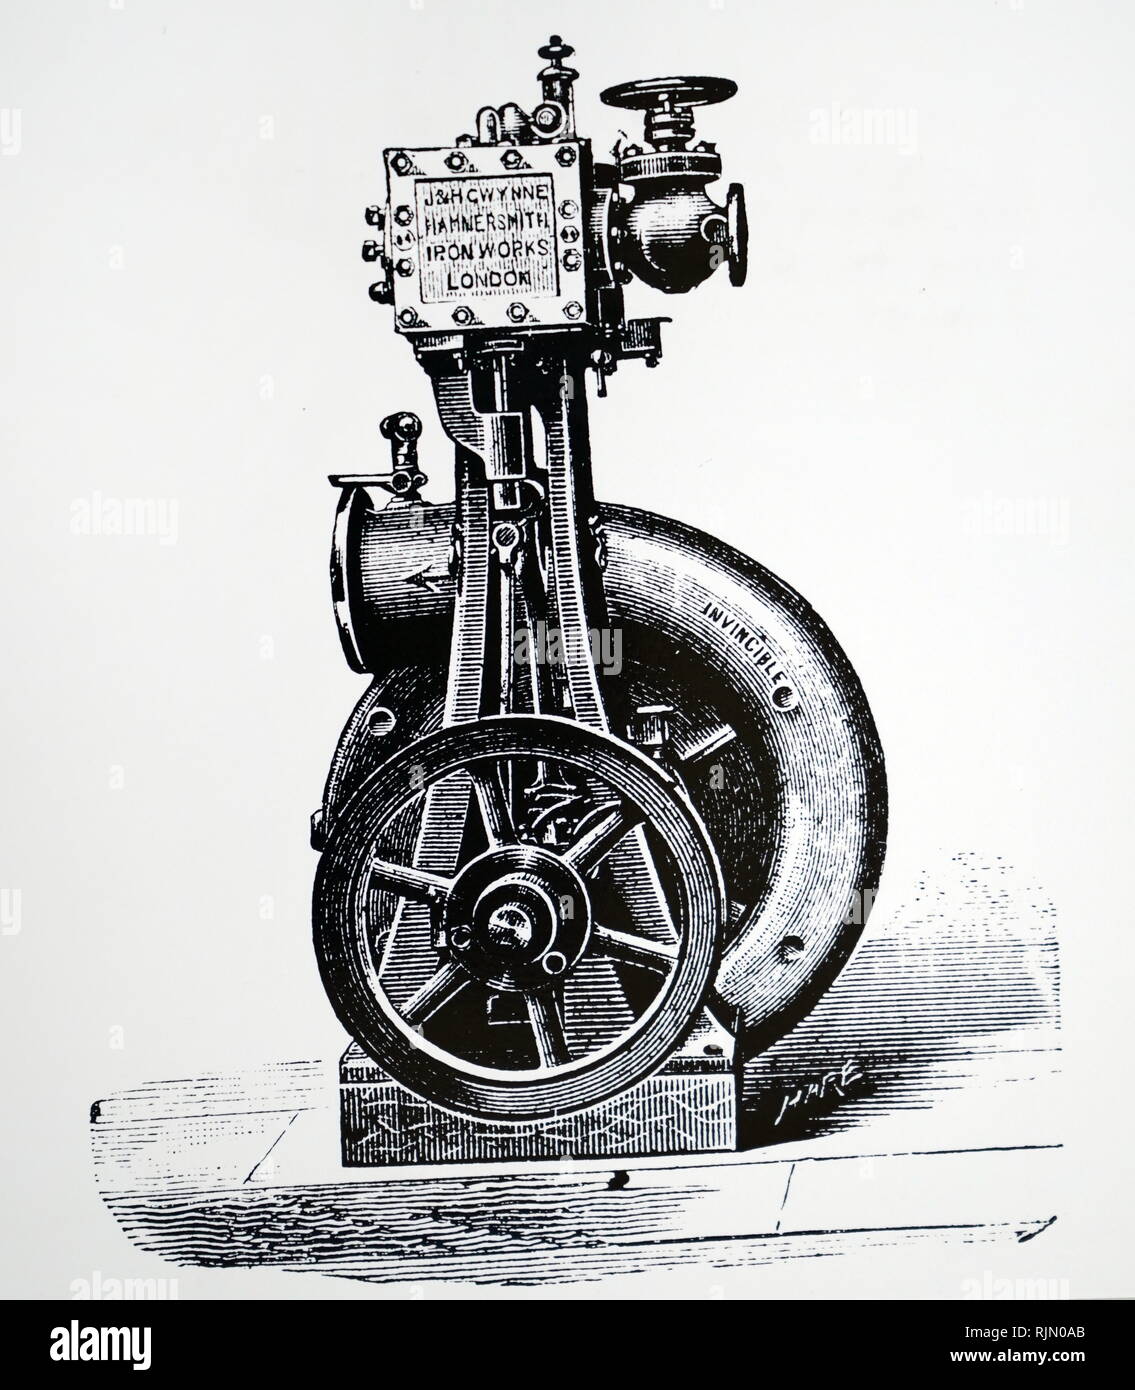 Illustration par une pompe centrifuge de J. & H. Gwynne, 75015 Iron Works, Londres. 1890 Banque D'Images